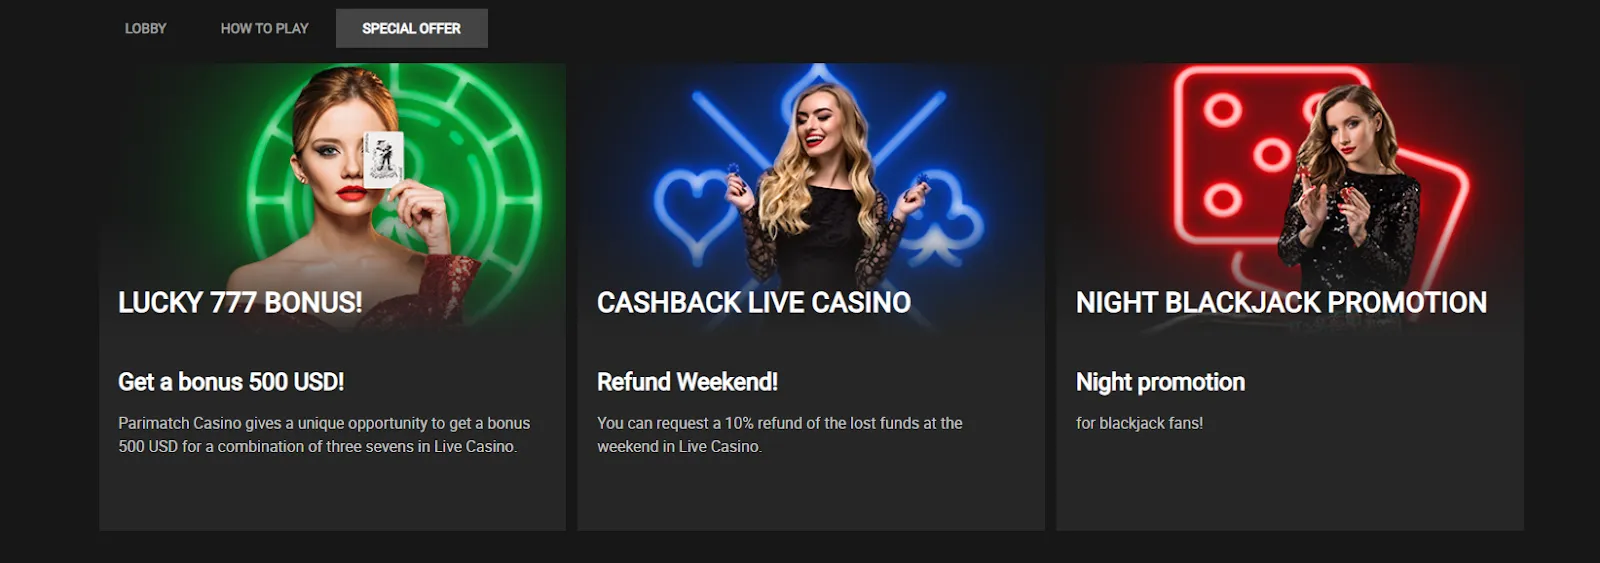 Parimatch live casino offer.